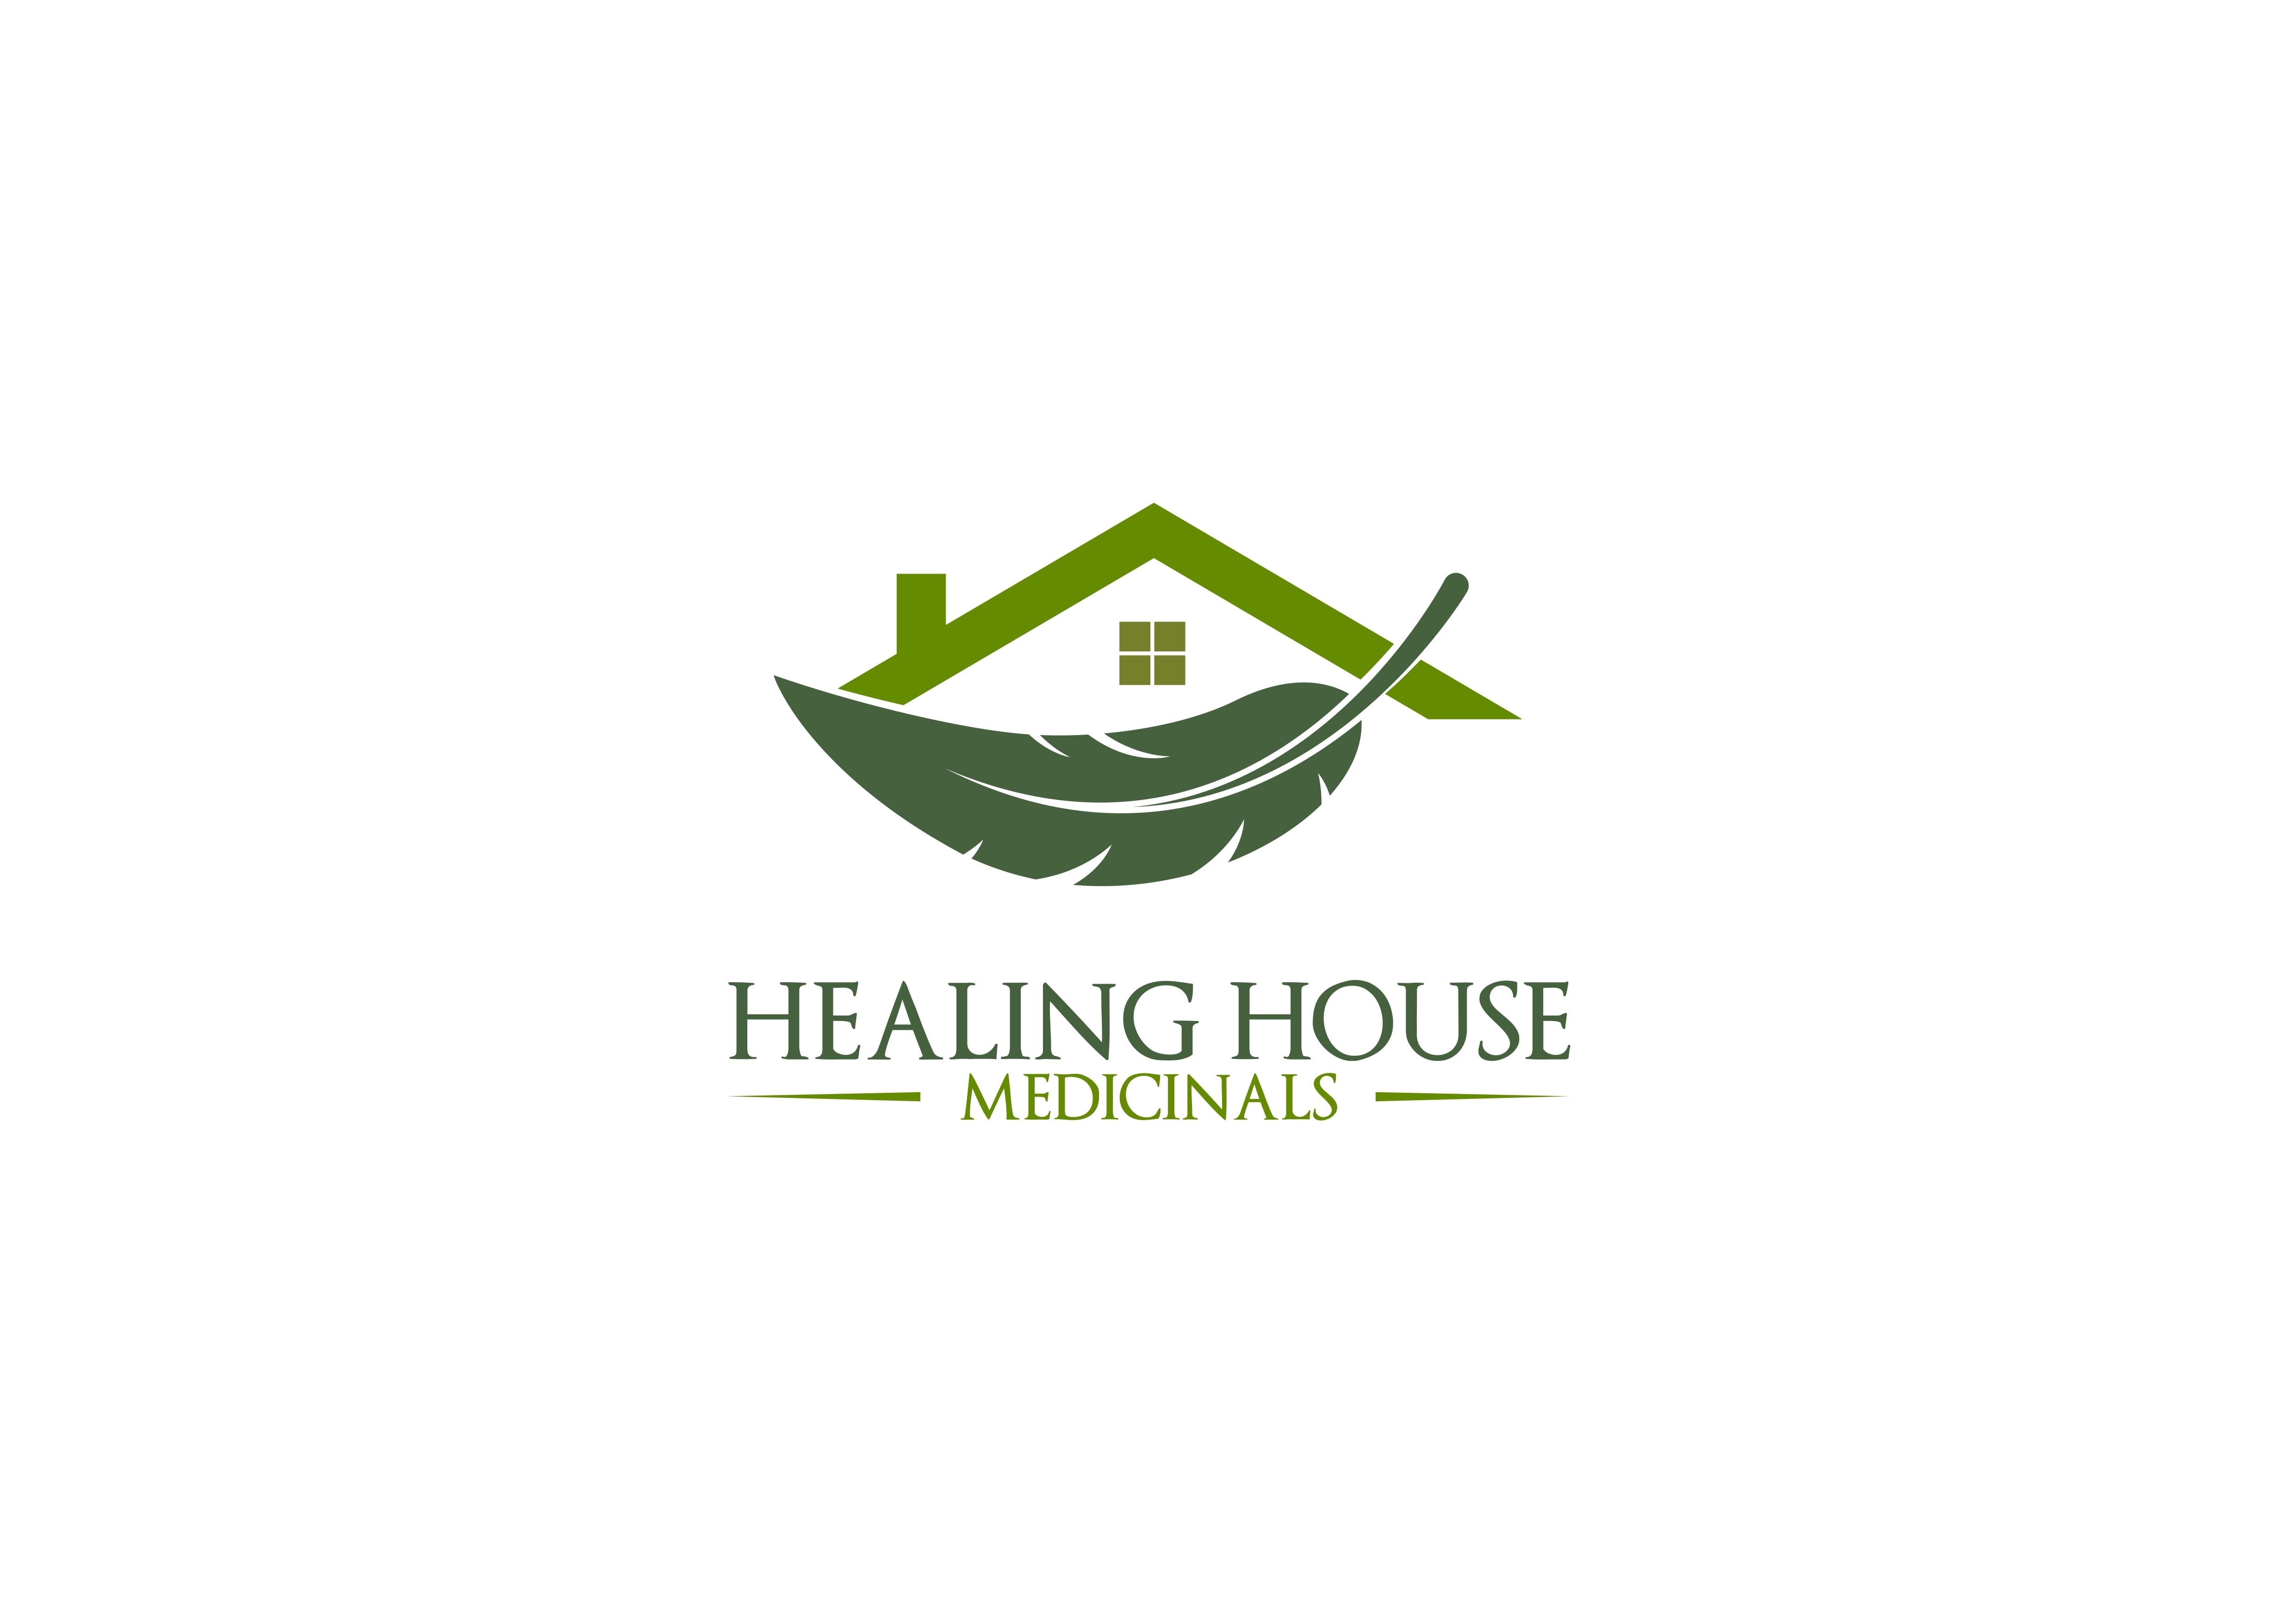 Healing House Medicinals - Medical Marijuana Doctors - Cannabizme.com